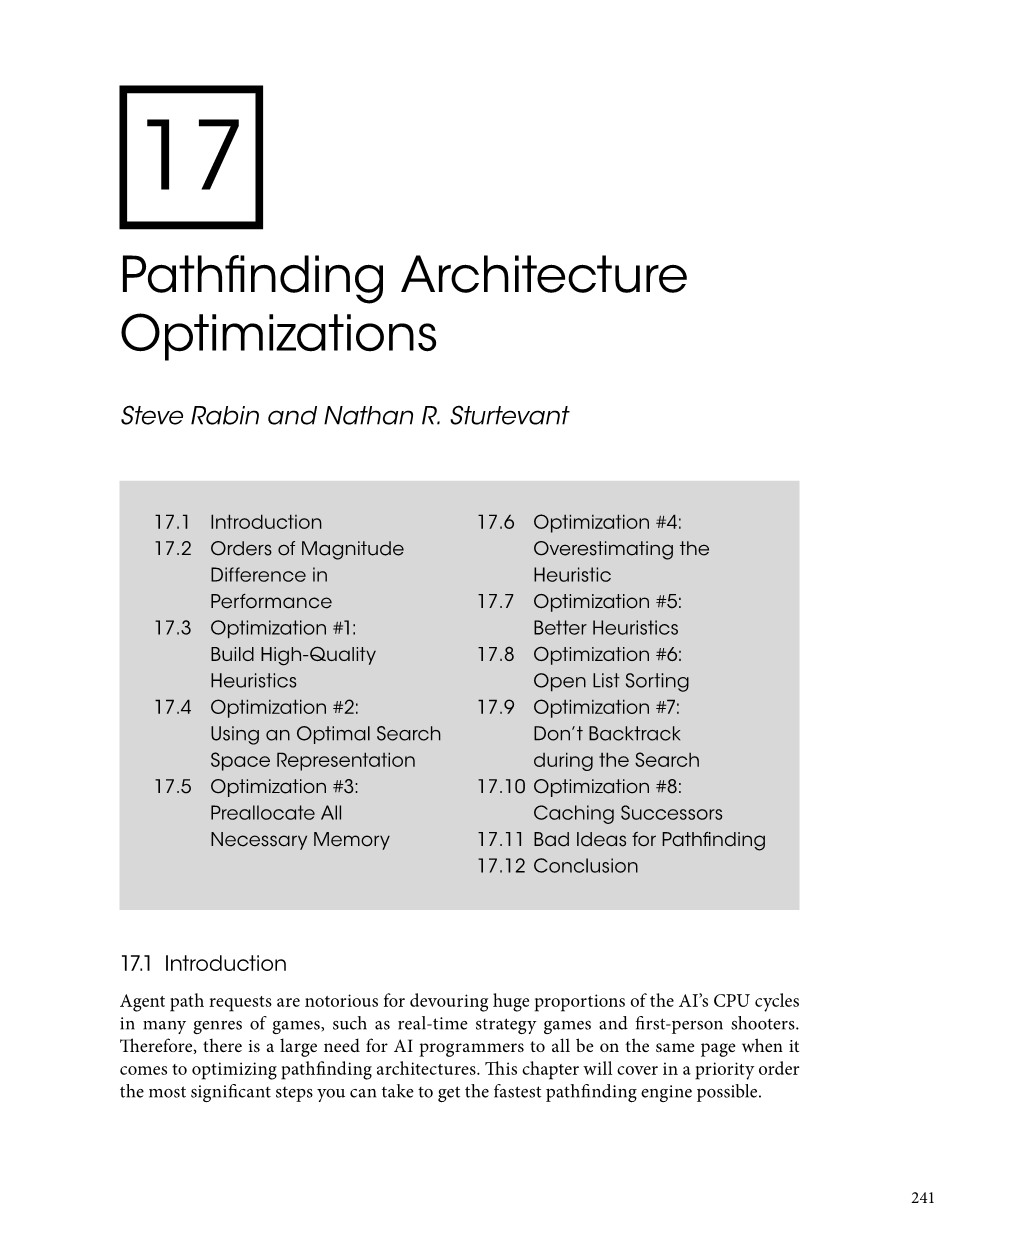 Pathfinding Architecture Optimizations